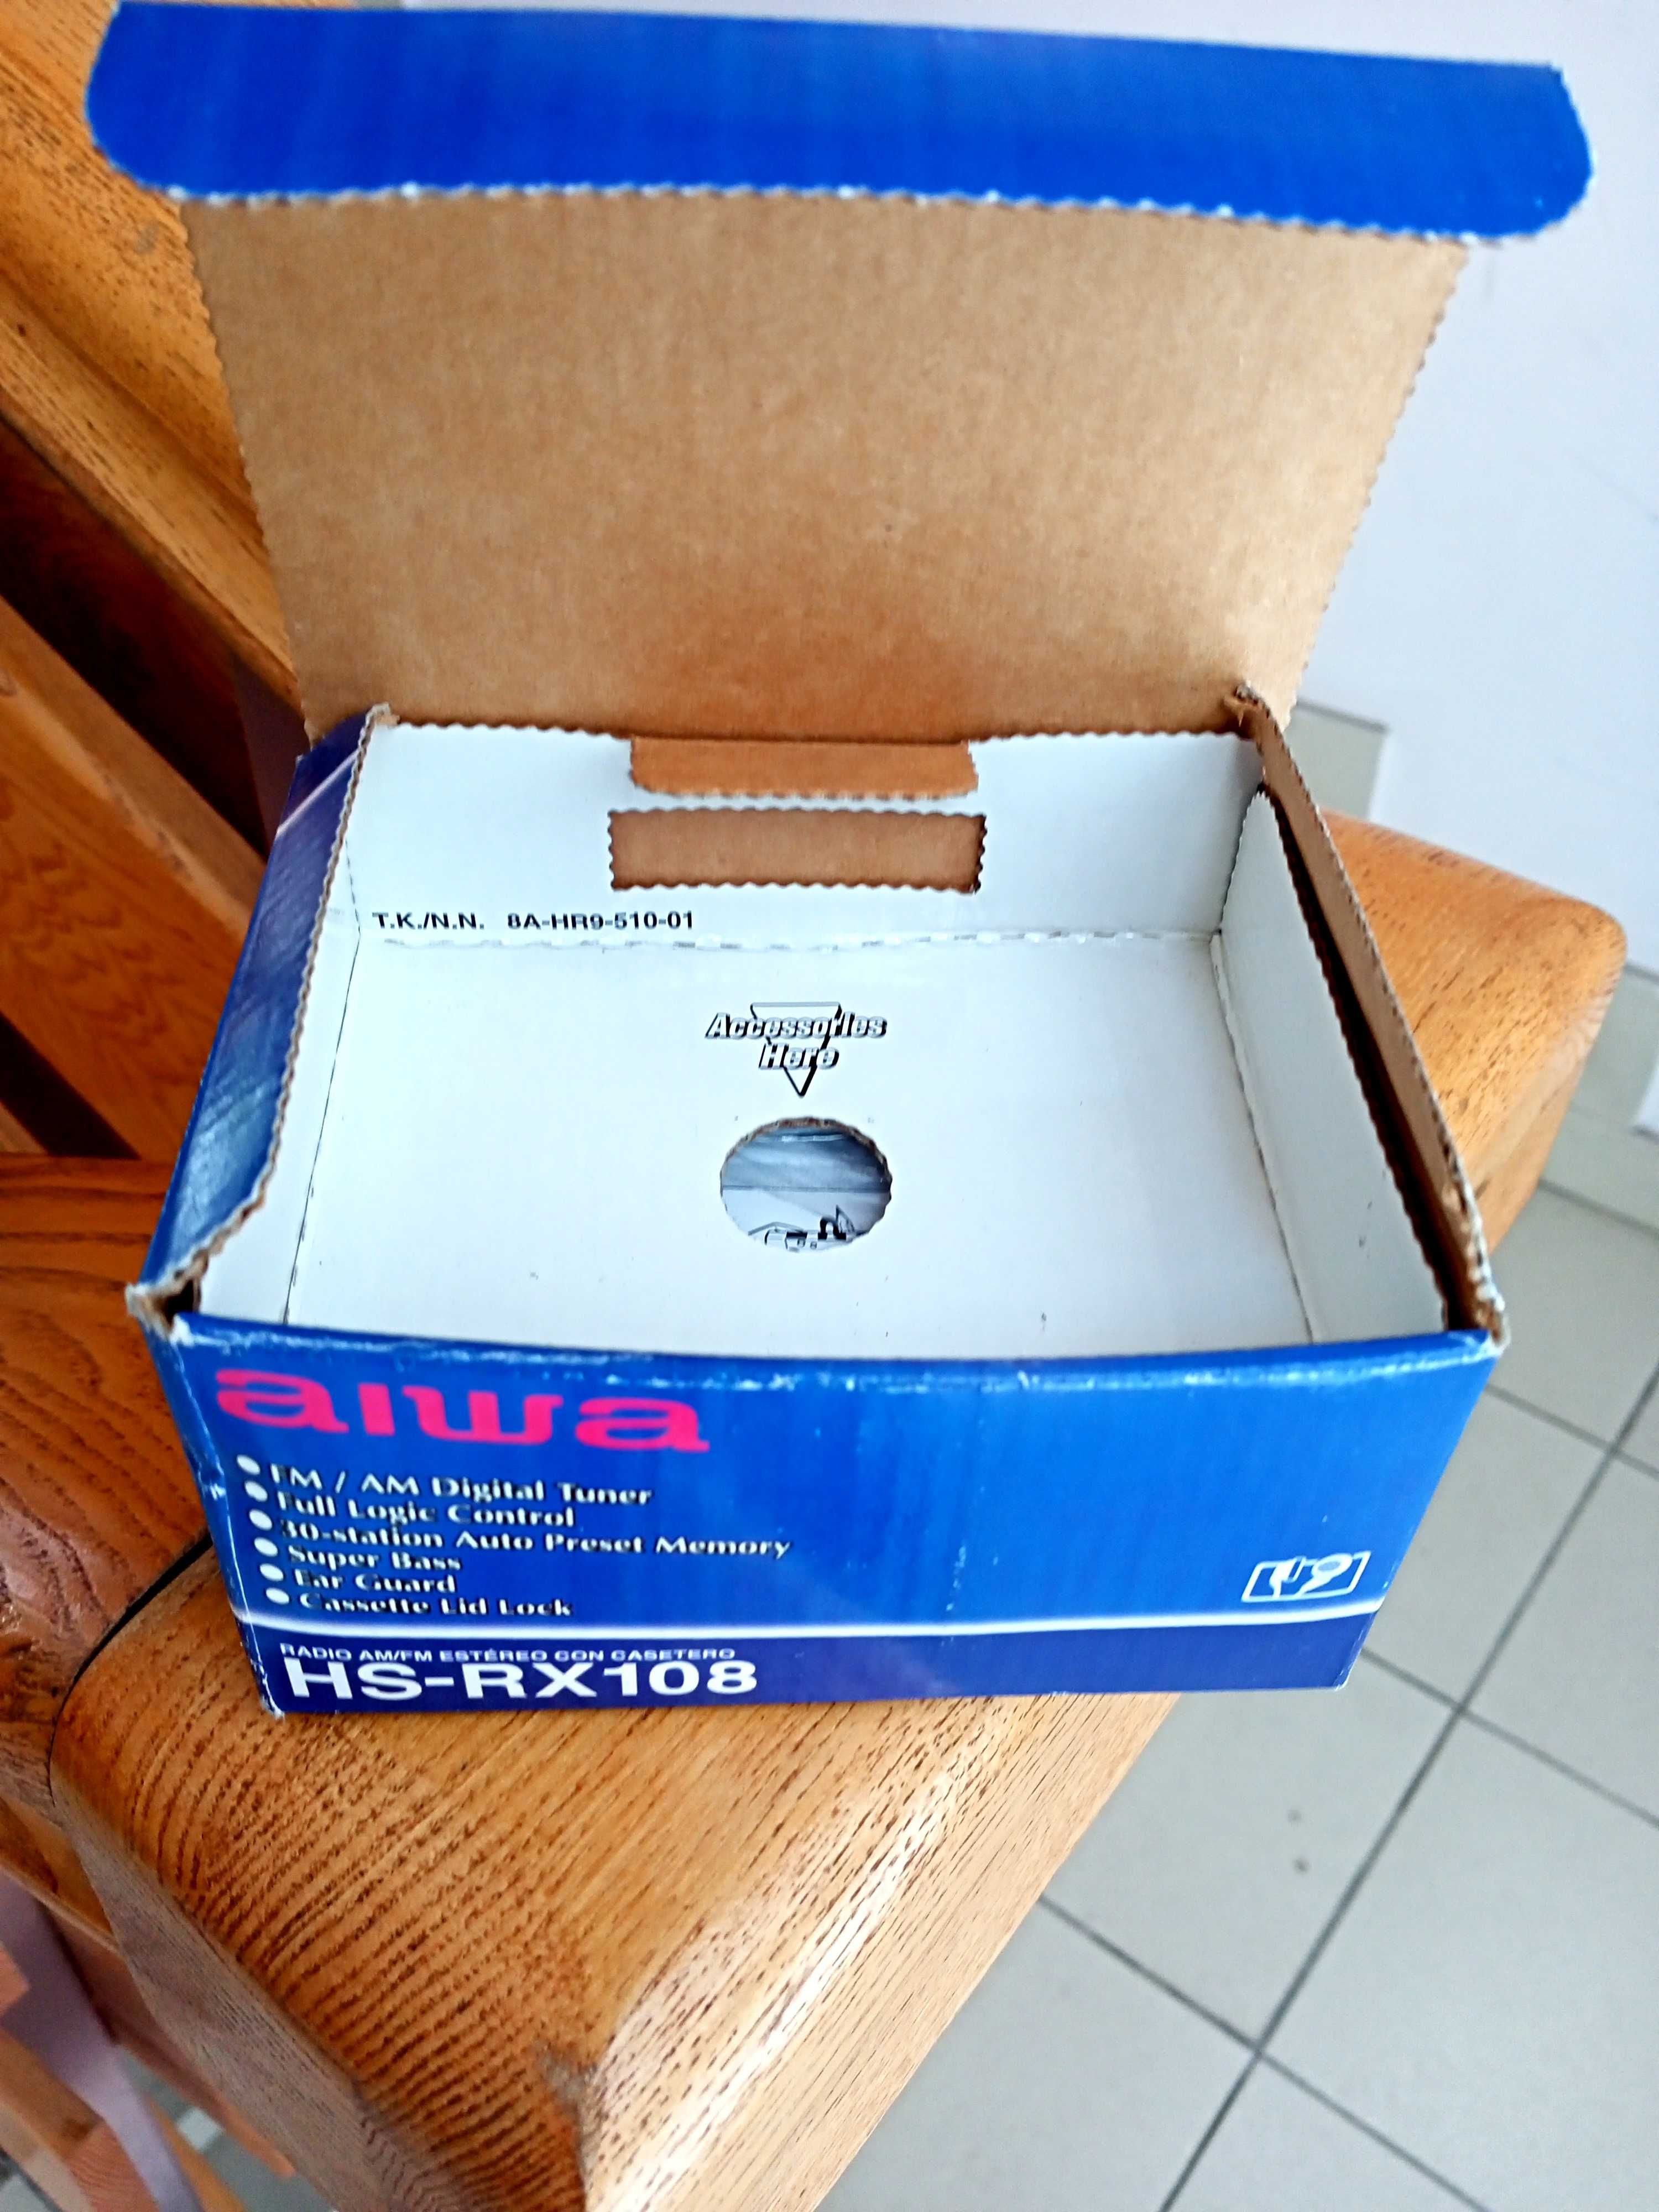 Кассетный аудиоплеер Philips Walkman AQ-6595.